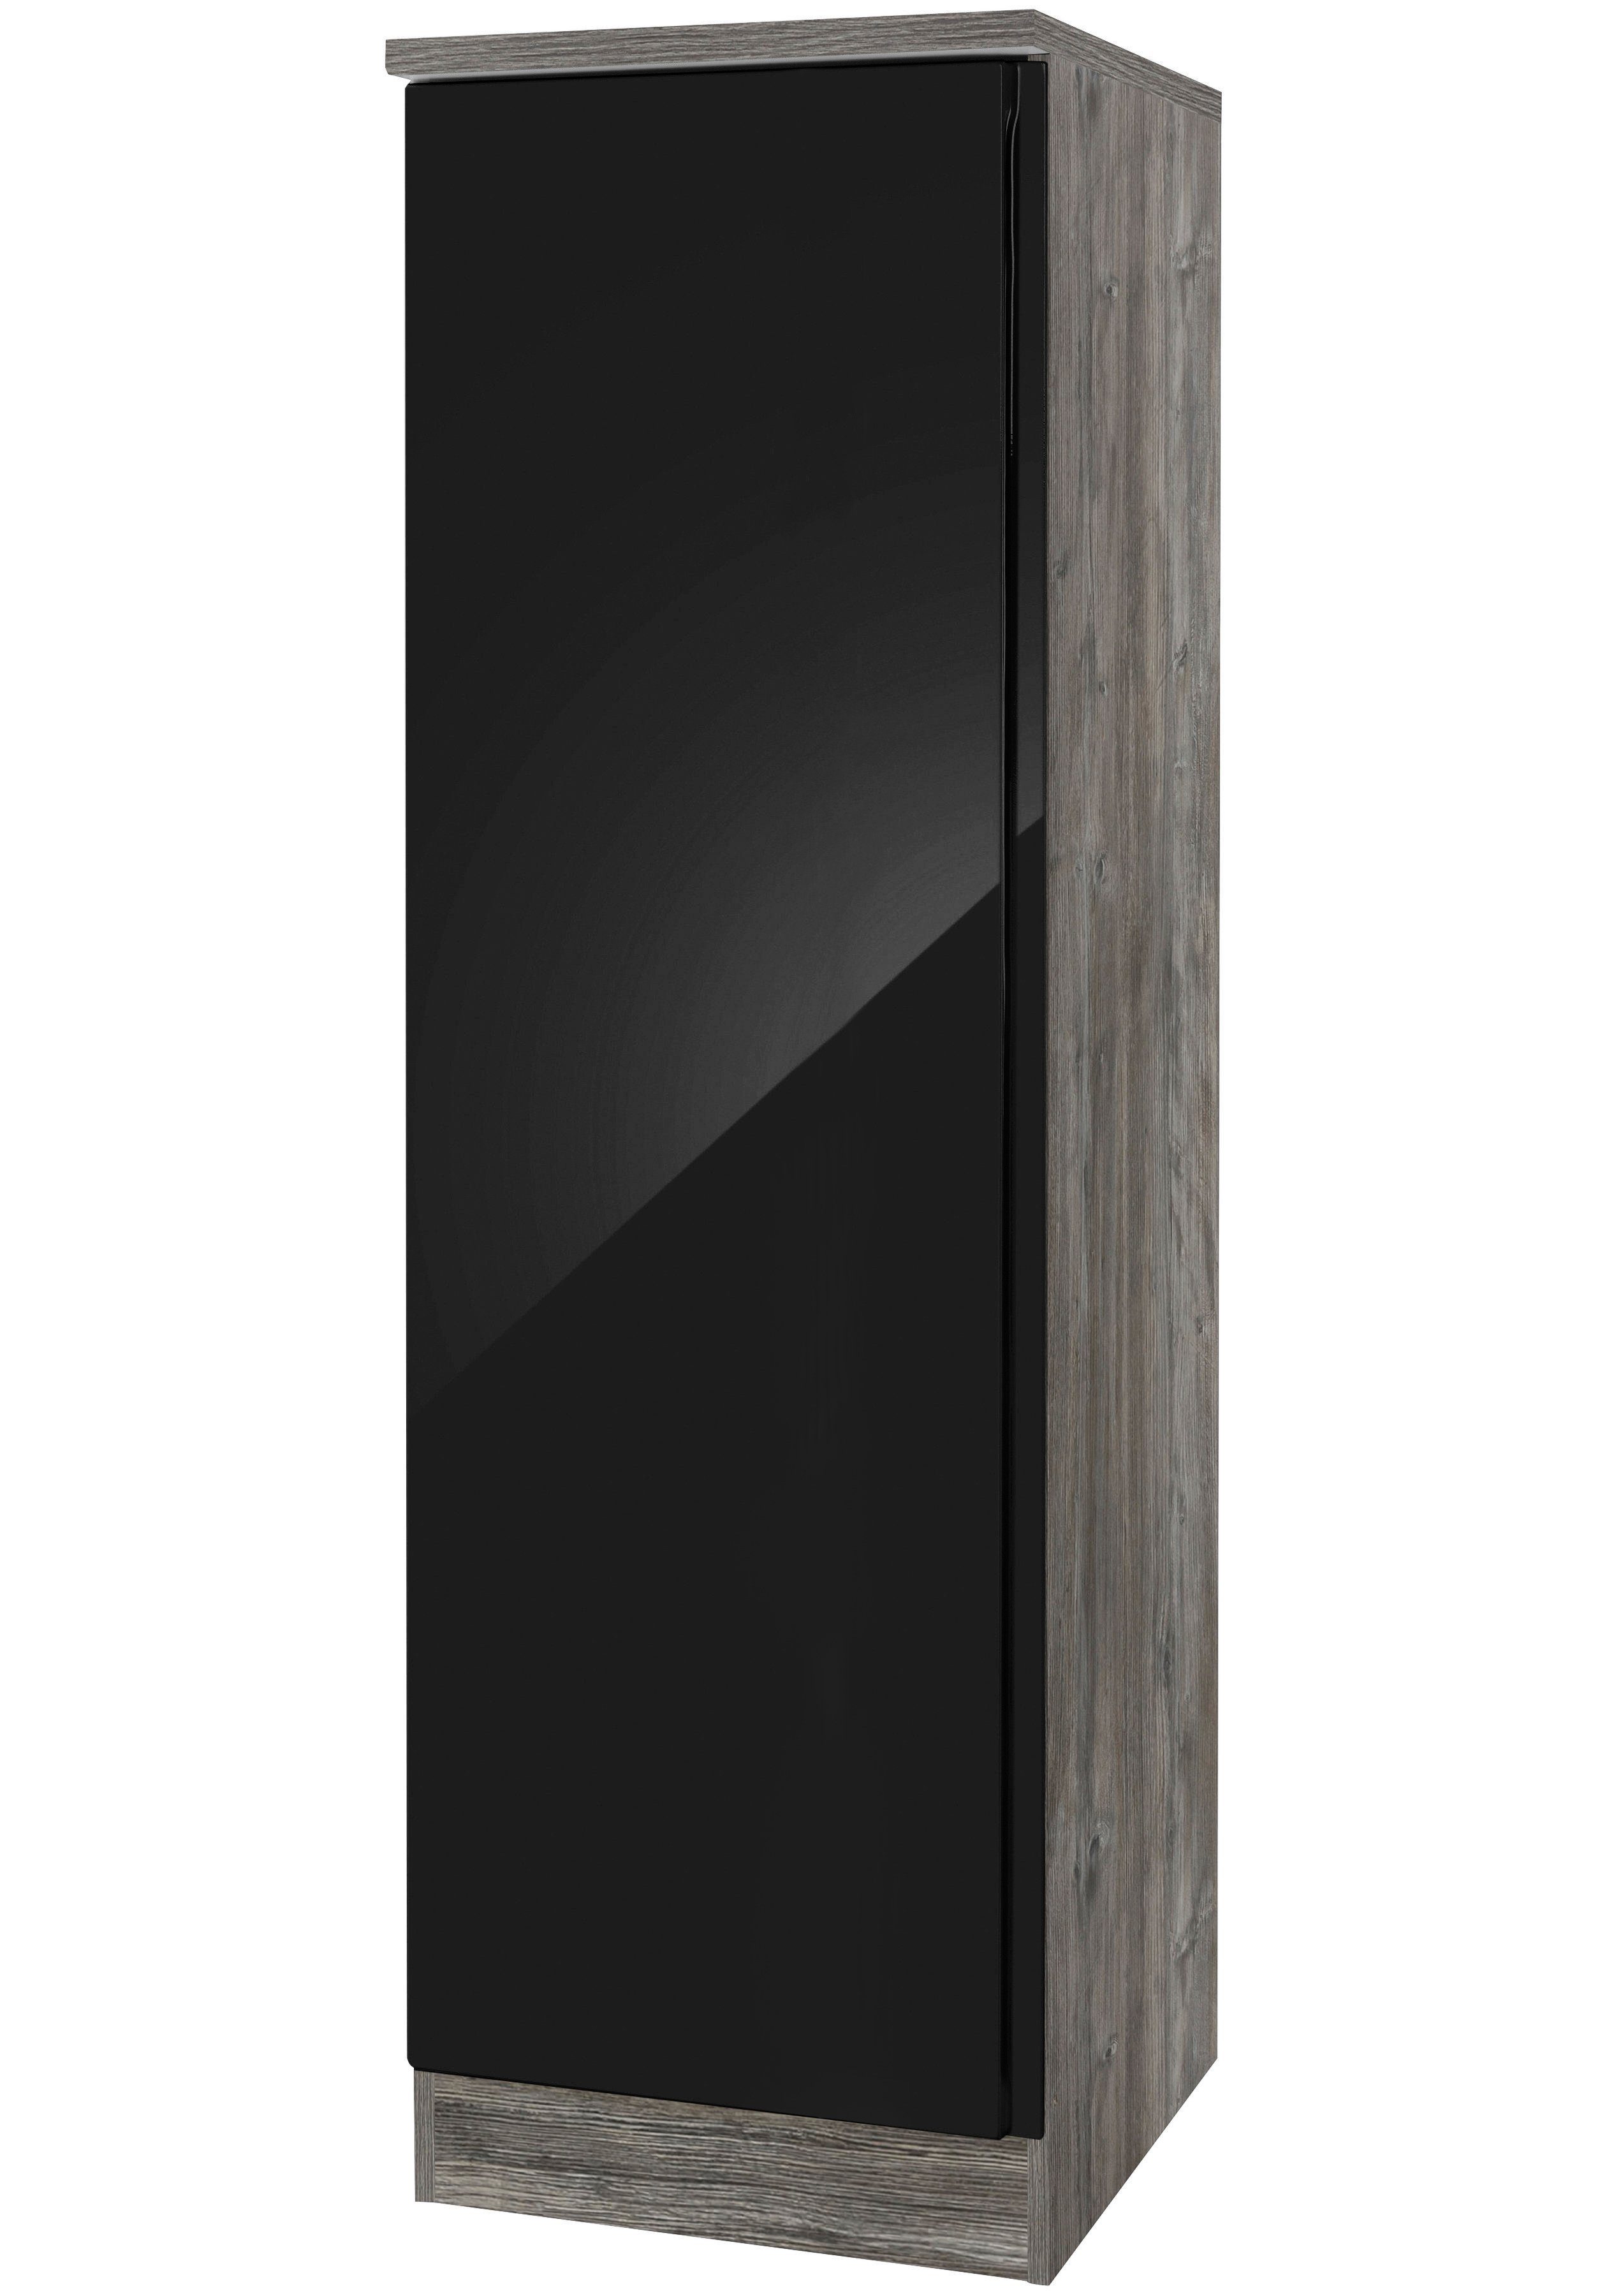 HELD MÖBEL Seitenschrank Virginia 50 cm breit, für viel Stauraum schwarz Hochglanz | eichevintage | Vorratsschränke